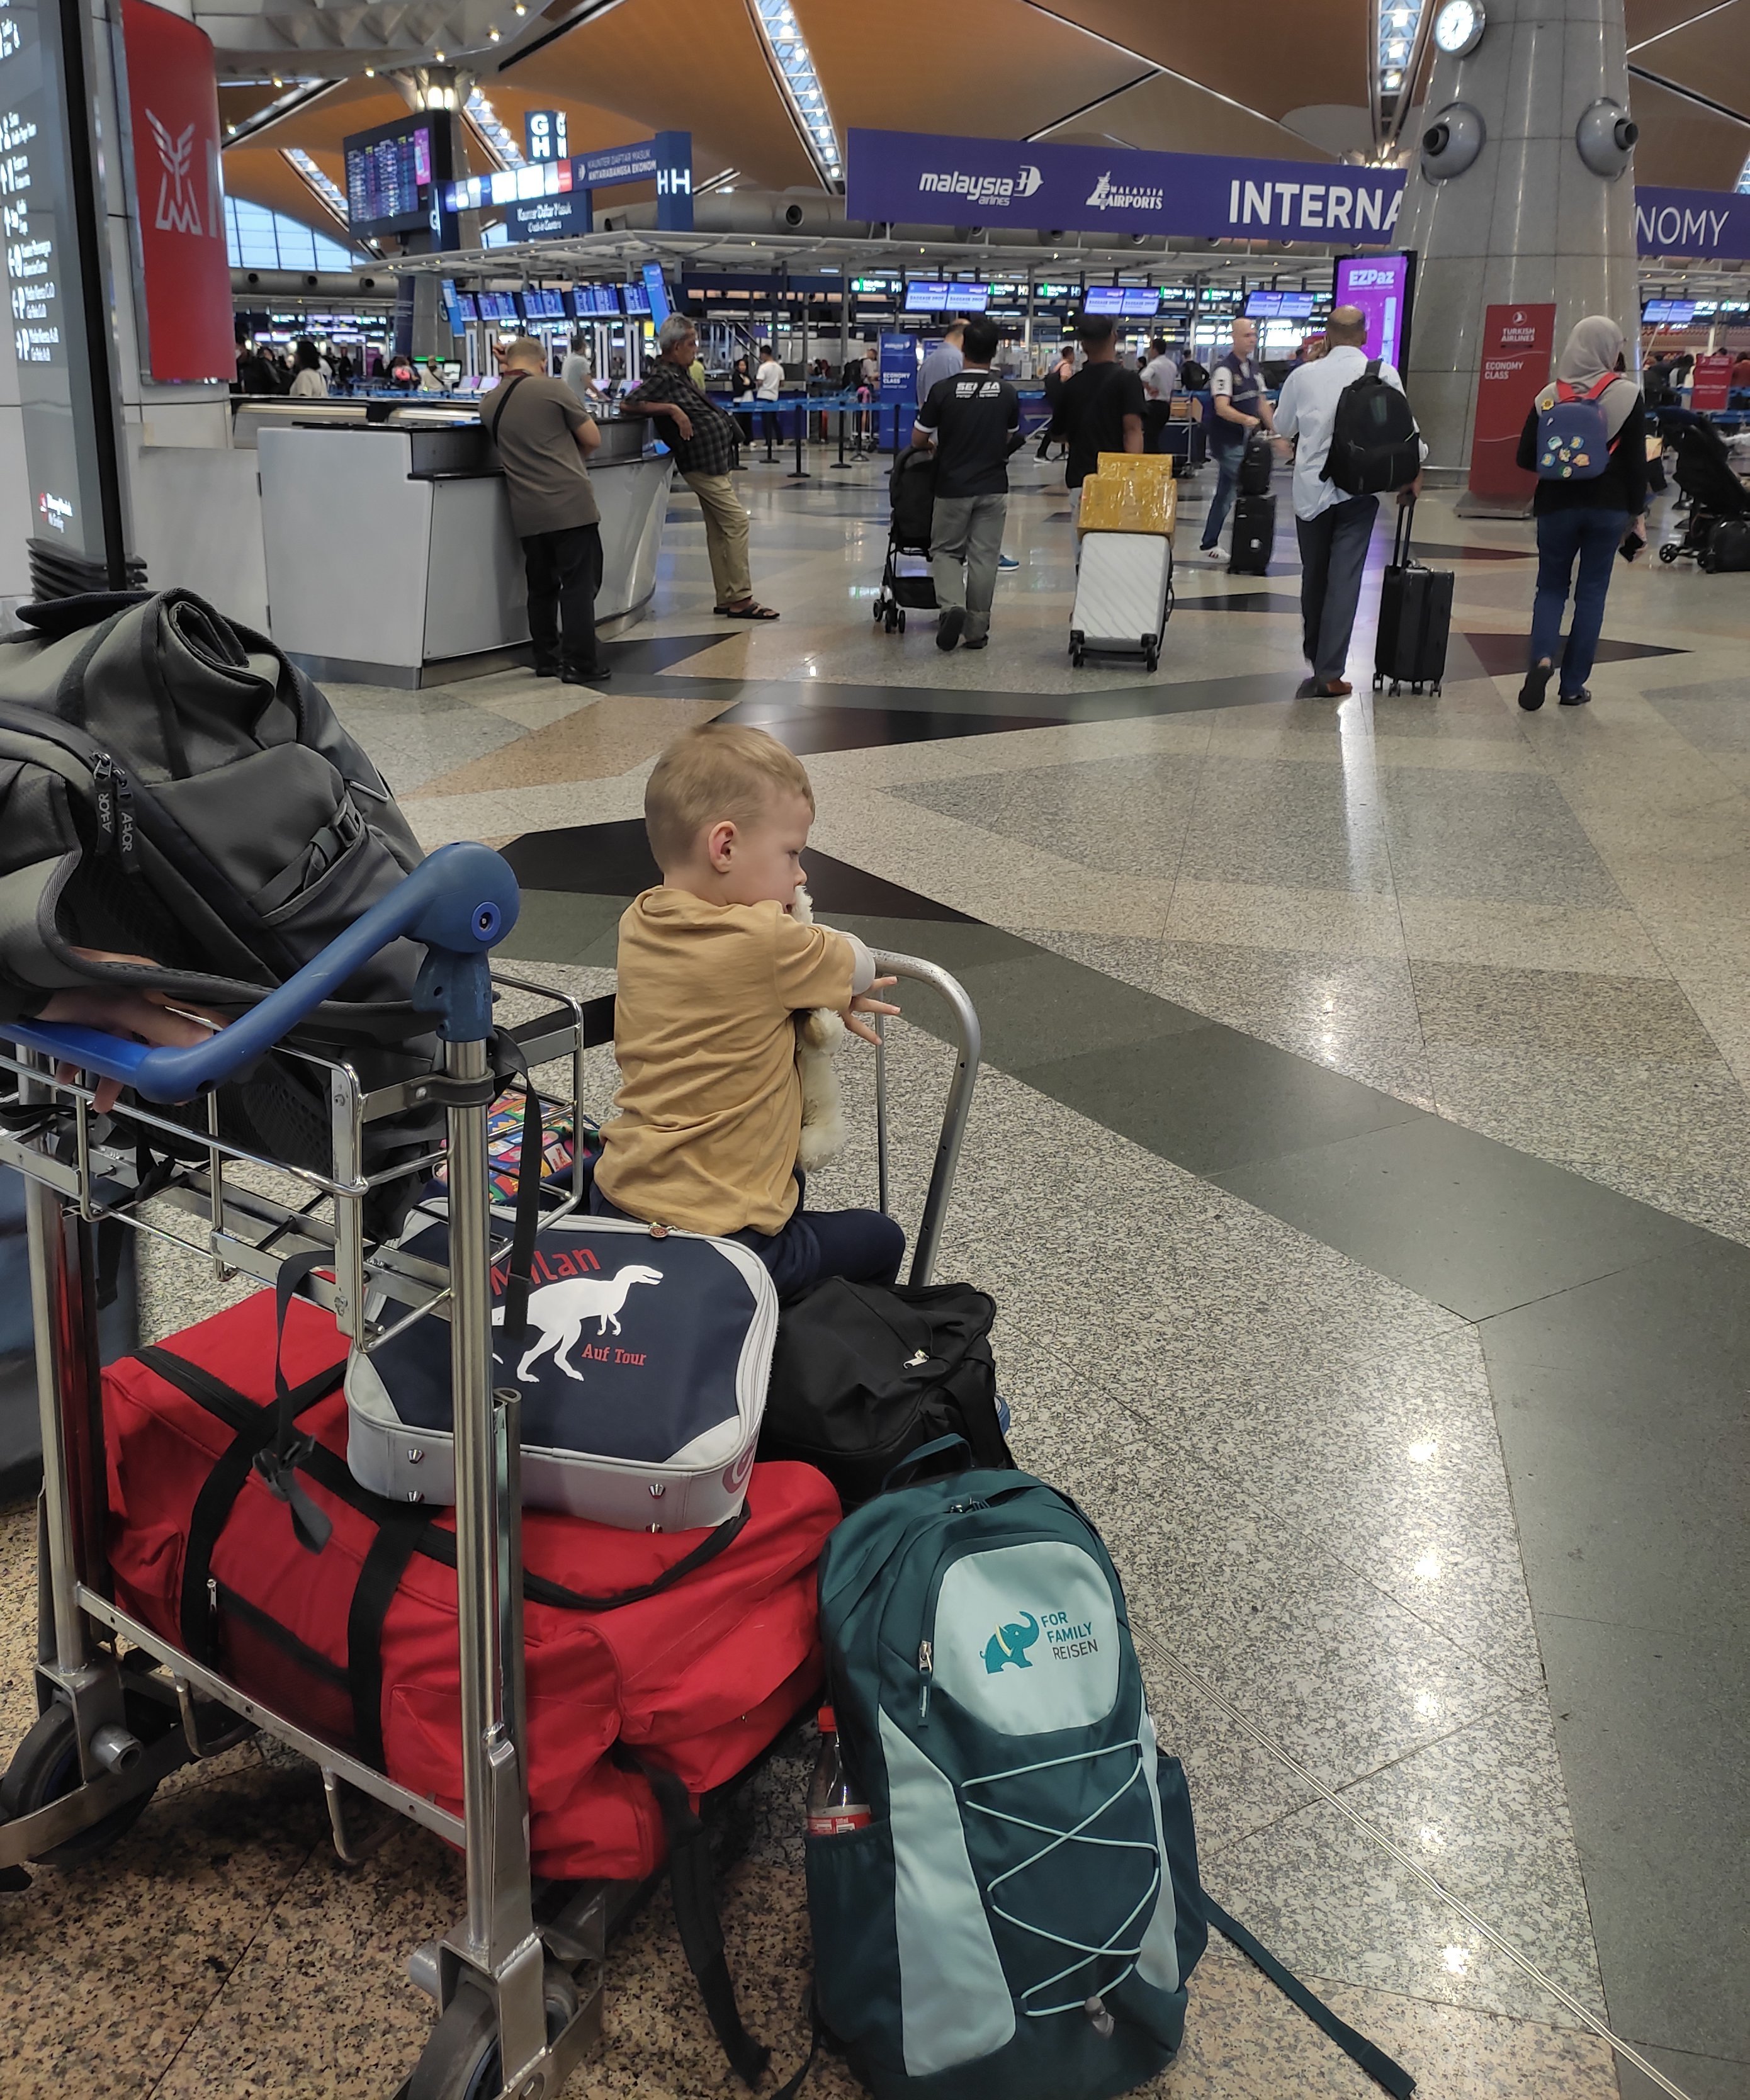 Borneo mit Kindern - Borneo mit Kindern Erfahrungen - Borneo Urlaub mit Kindern - Anreise mit Kleinkind am Flughafen